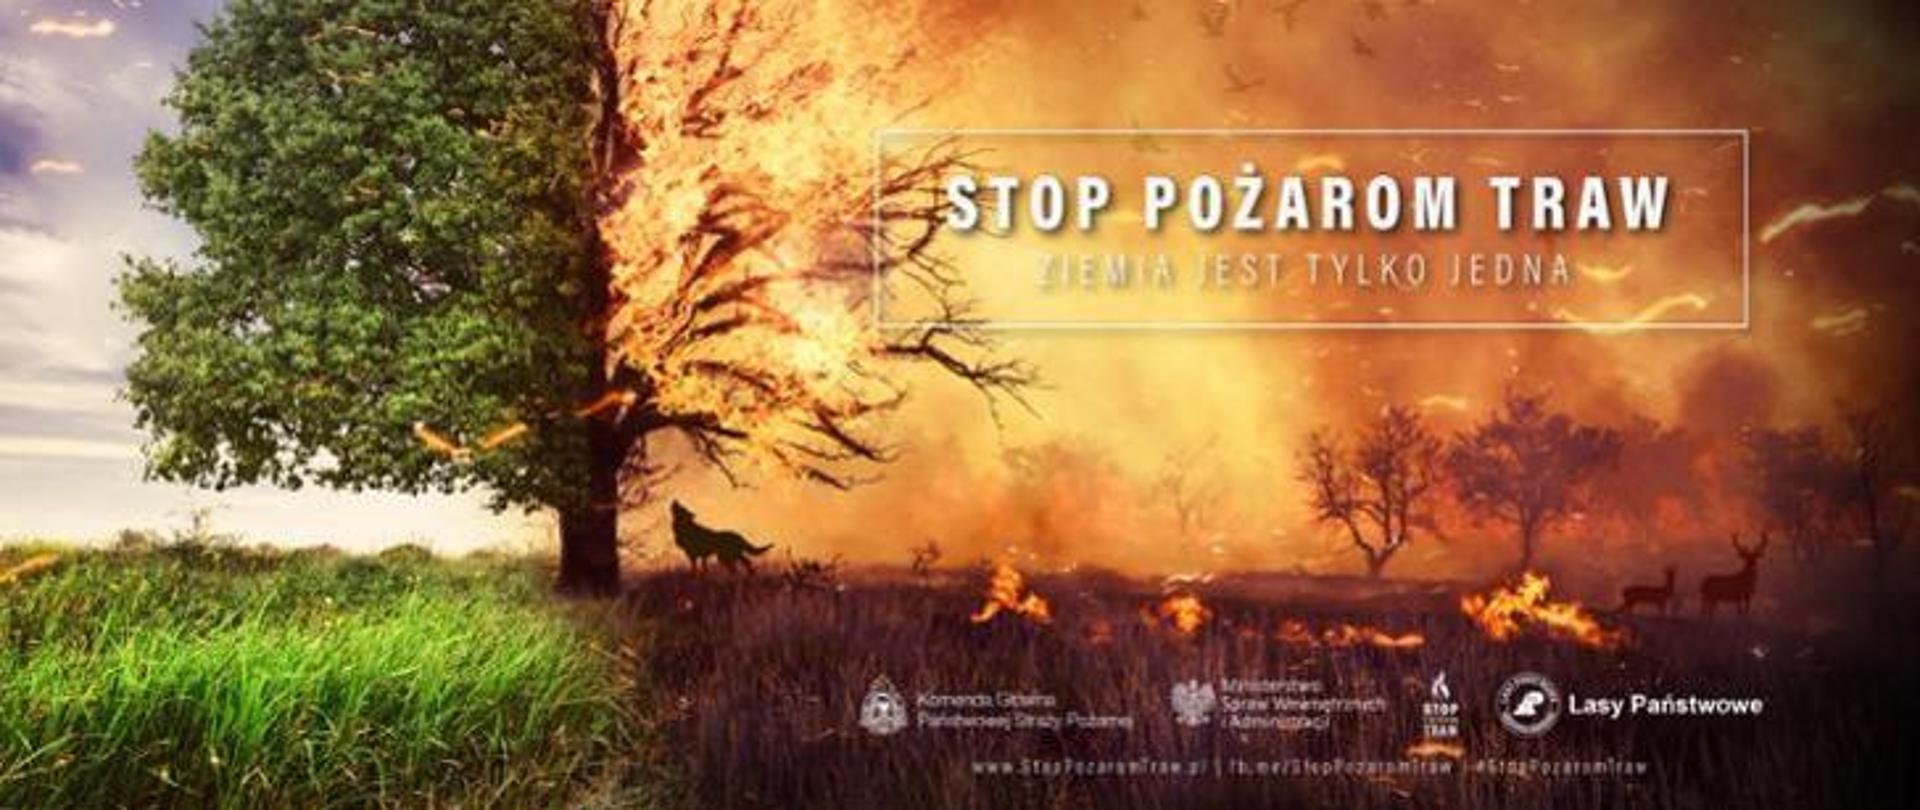 Zdjęcie przedstawia inscenizację z lewej strony zielonej trawy i drzewa, natomiast prawa strona przedstawia palącą się trawę i drugą połowę drzewa oraz uciekające zwierzęta z pożaru.